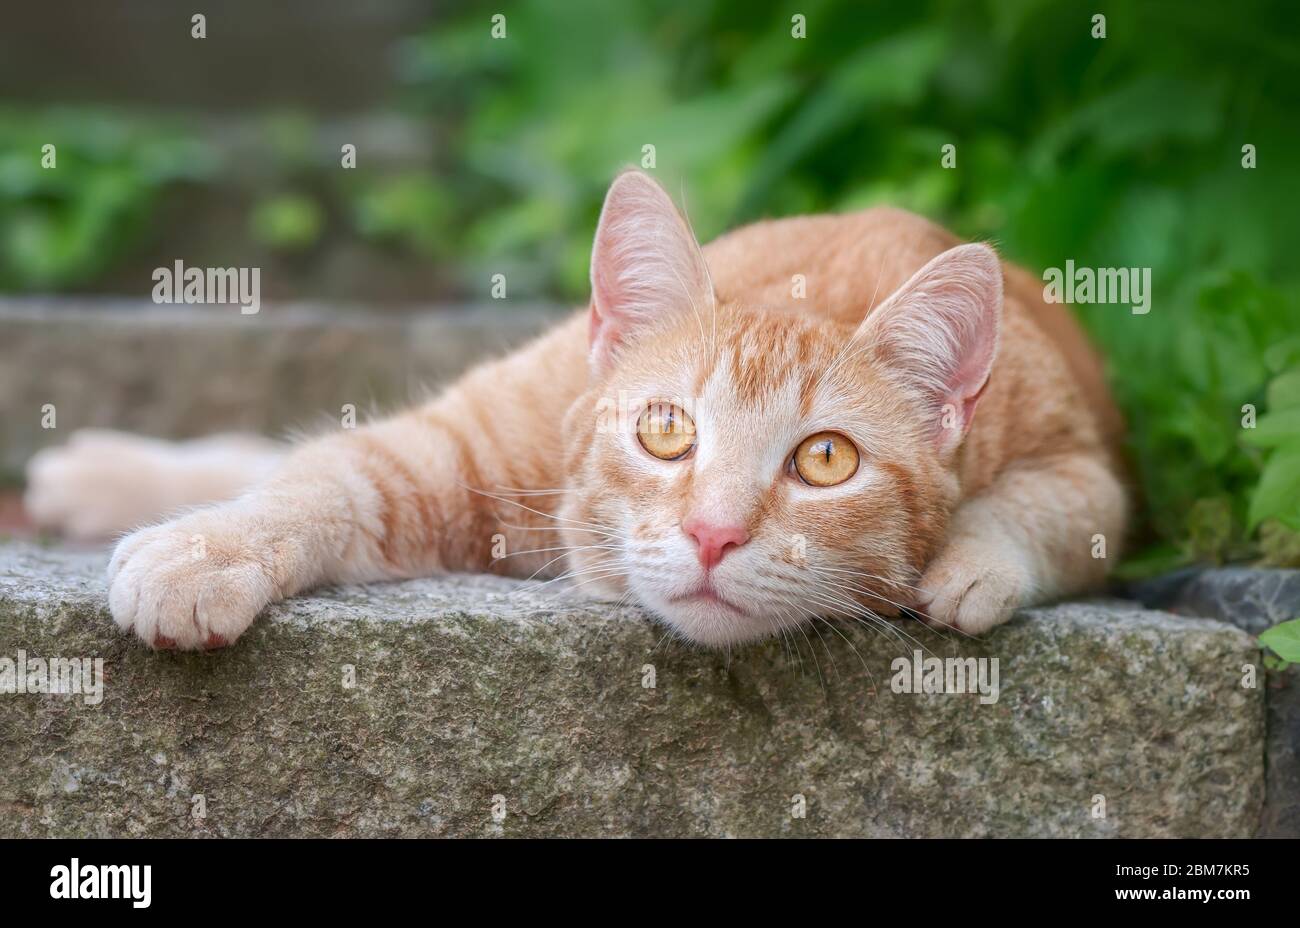 Mignon jeune chat de gingembre, européen Shorthair, allongé sur un pas de pierre dans un jardin et regardant curieusement avec les yeux orange larges, Allemagne Banque D'Images